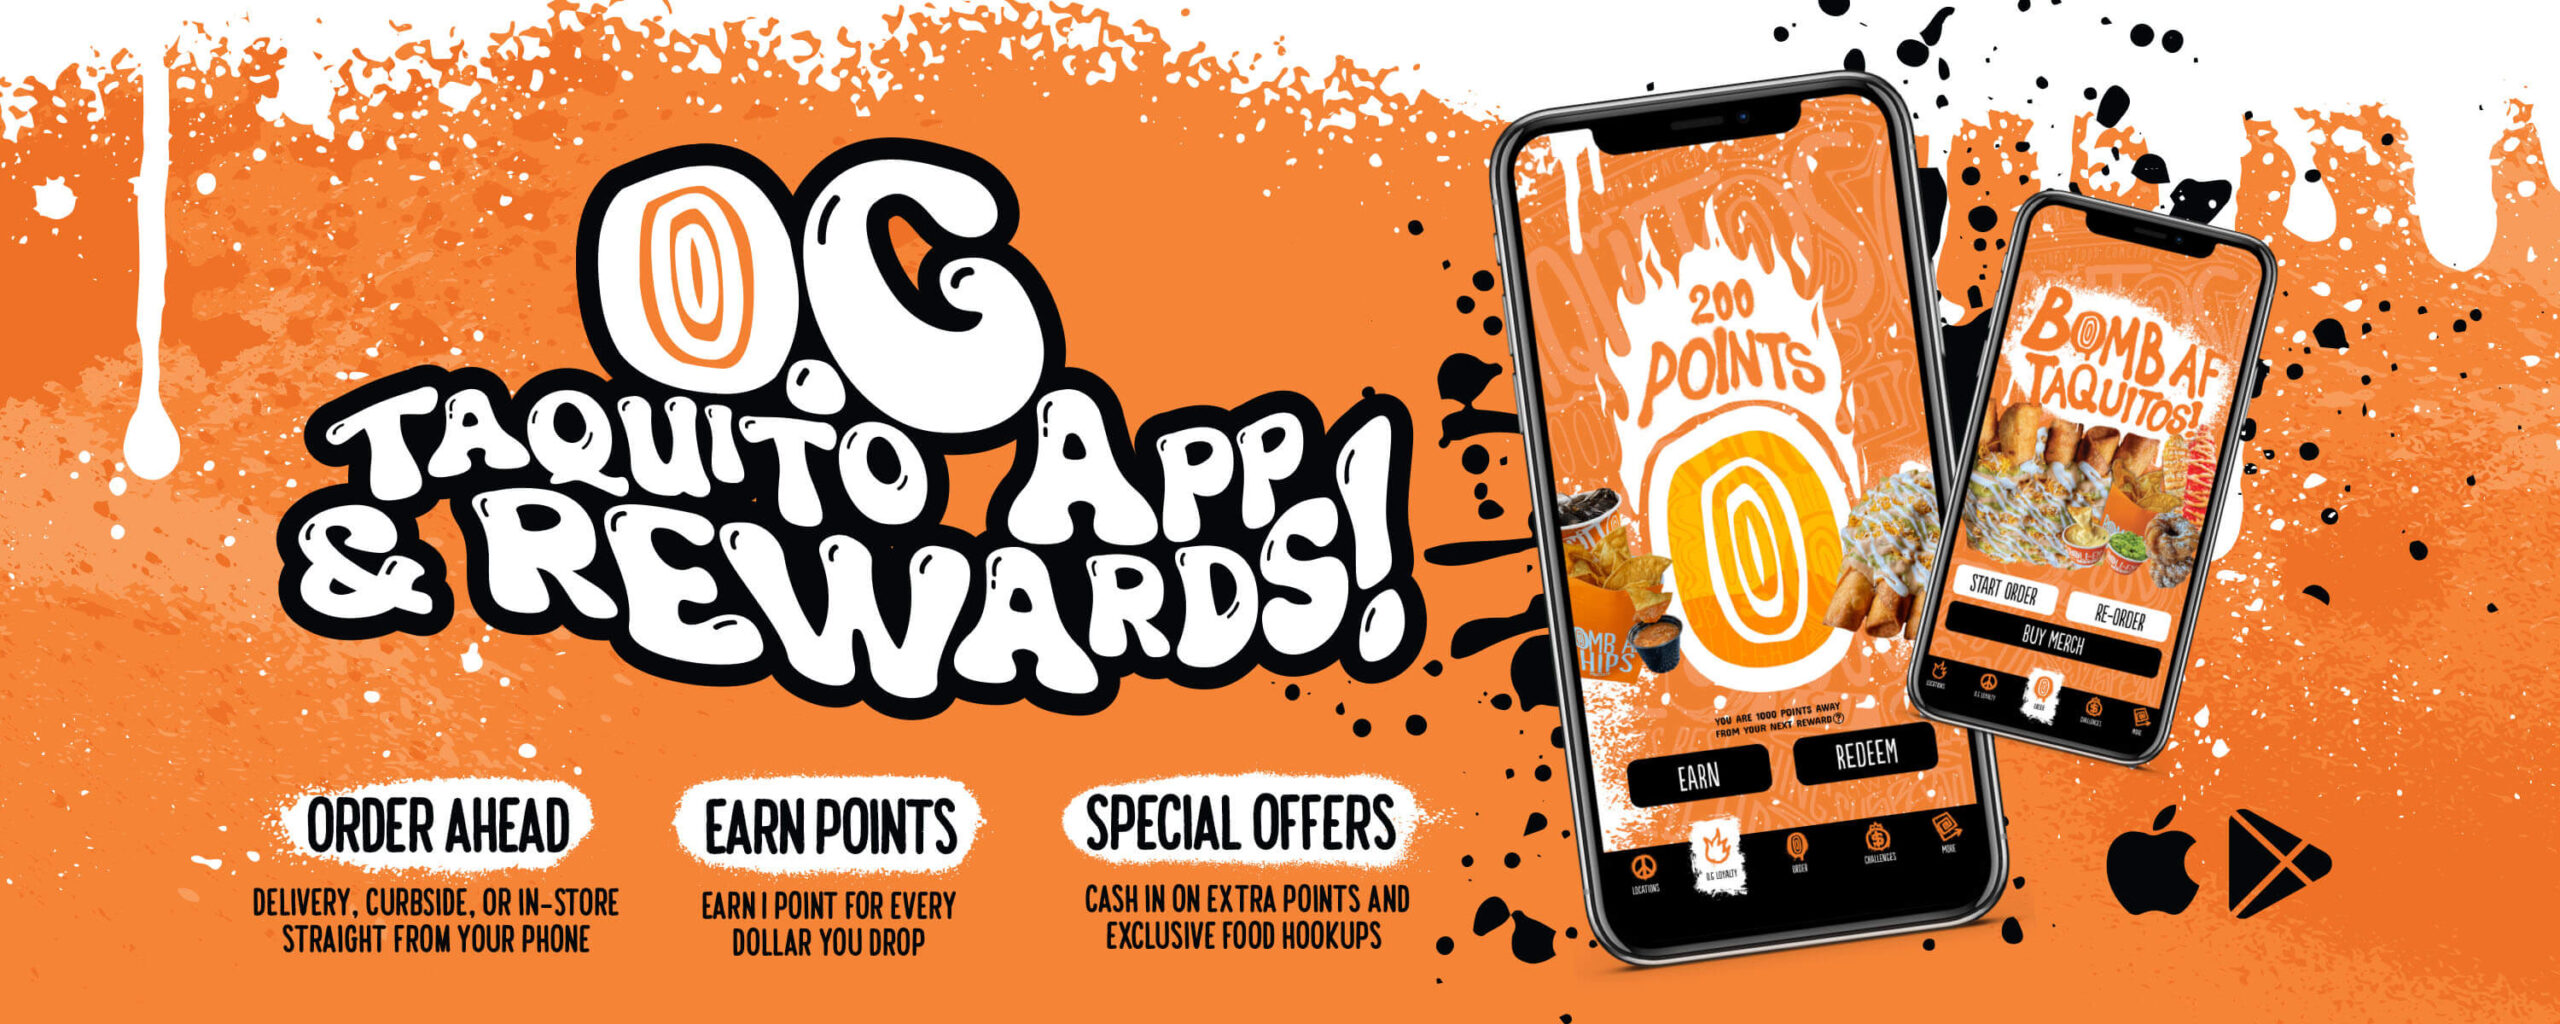 O.G Taquito App & Rewards! 